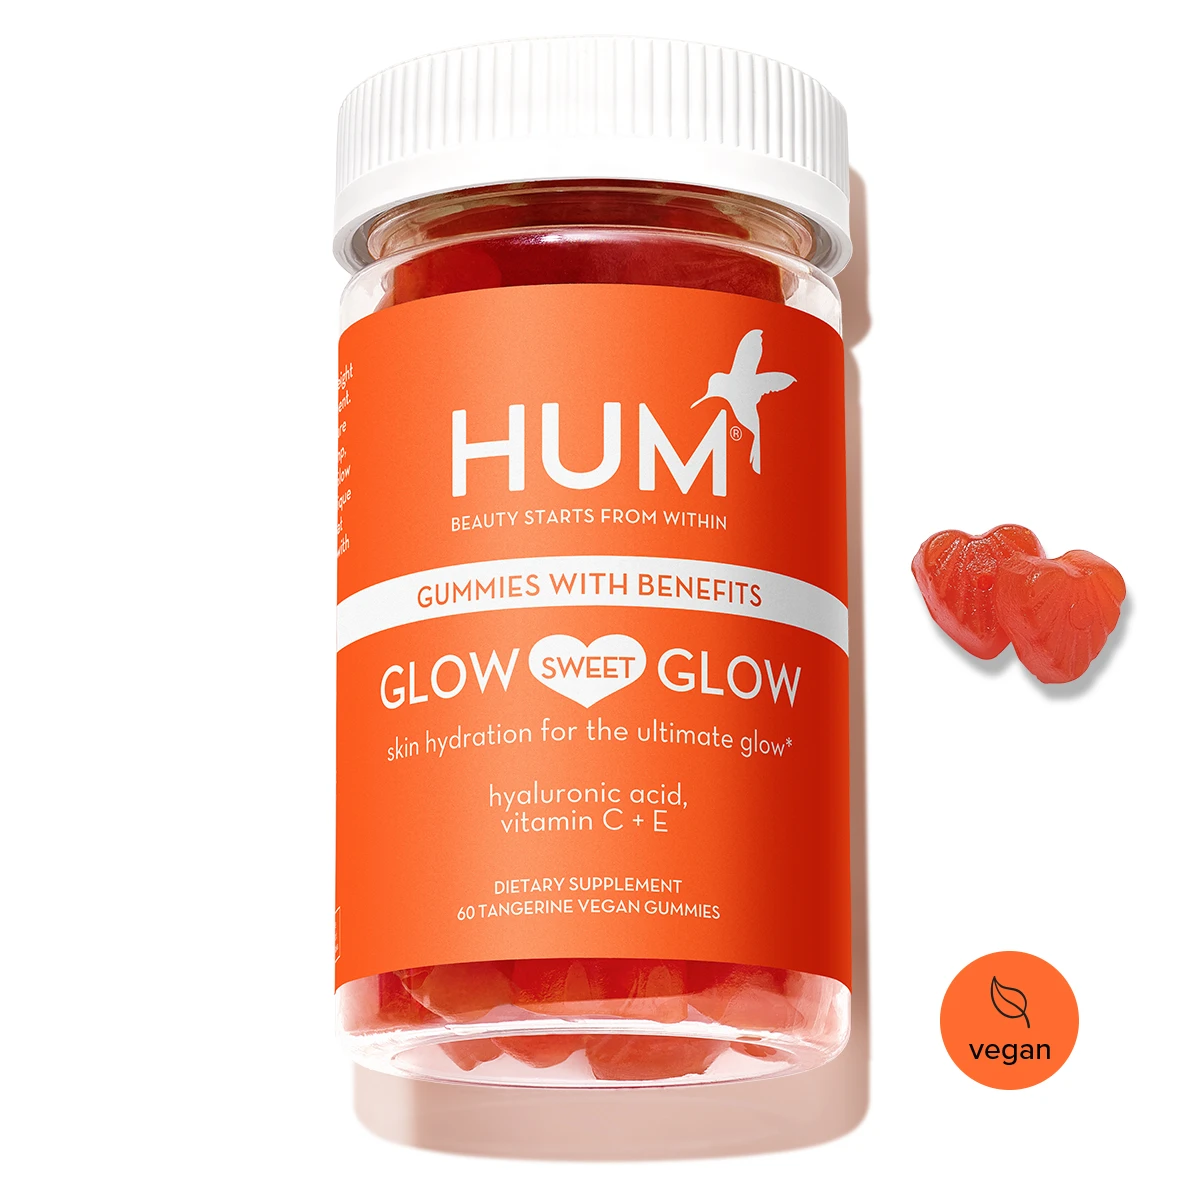 Vegan Gummy for Skin Hydration Glow Sweet Glow HUM Nutrition